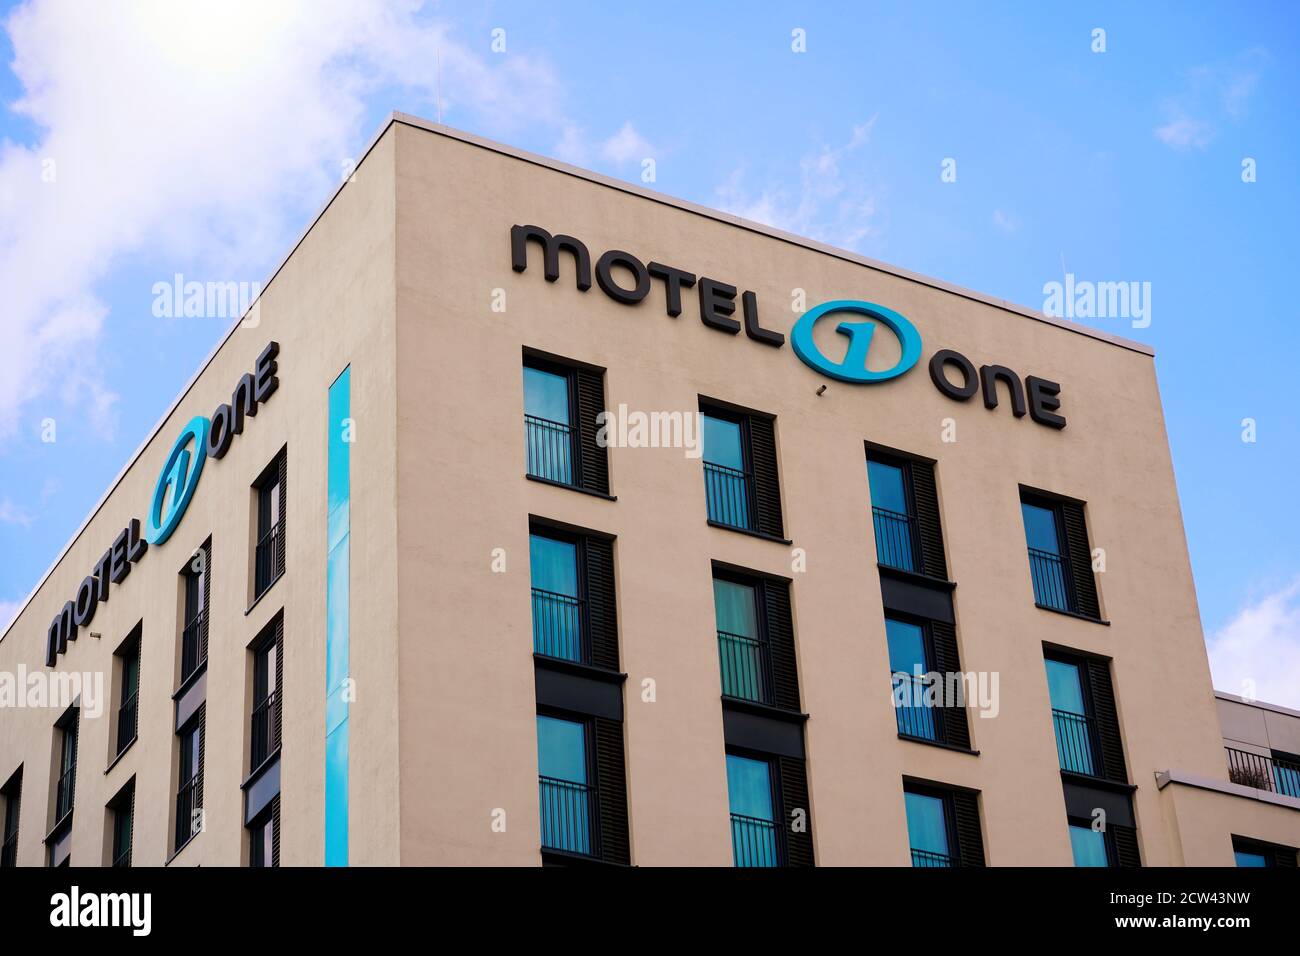 Extérieur du Motel un bâtiment près de la gare centrale de Düsseldorf. Cet  hôtel design économique a ouvert ses portes en 2013. Motel One est une  chaîne d'hôtels allemande populaire Photo Stock -